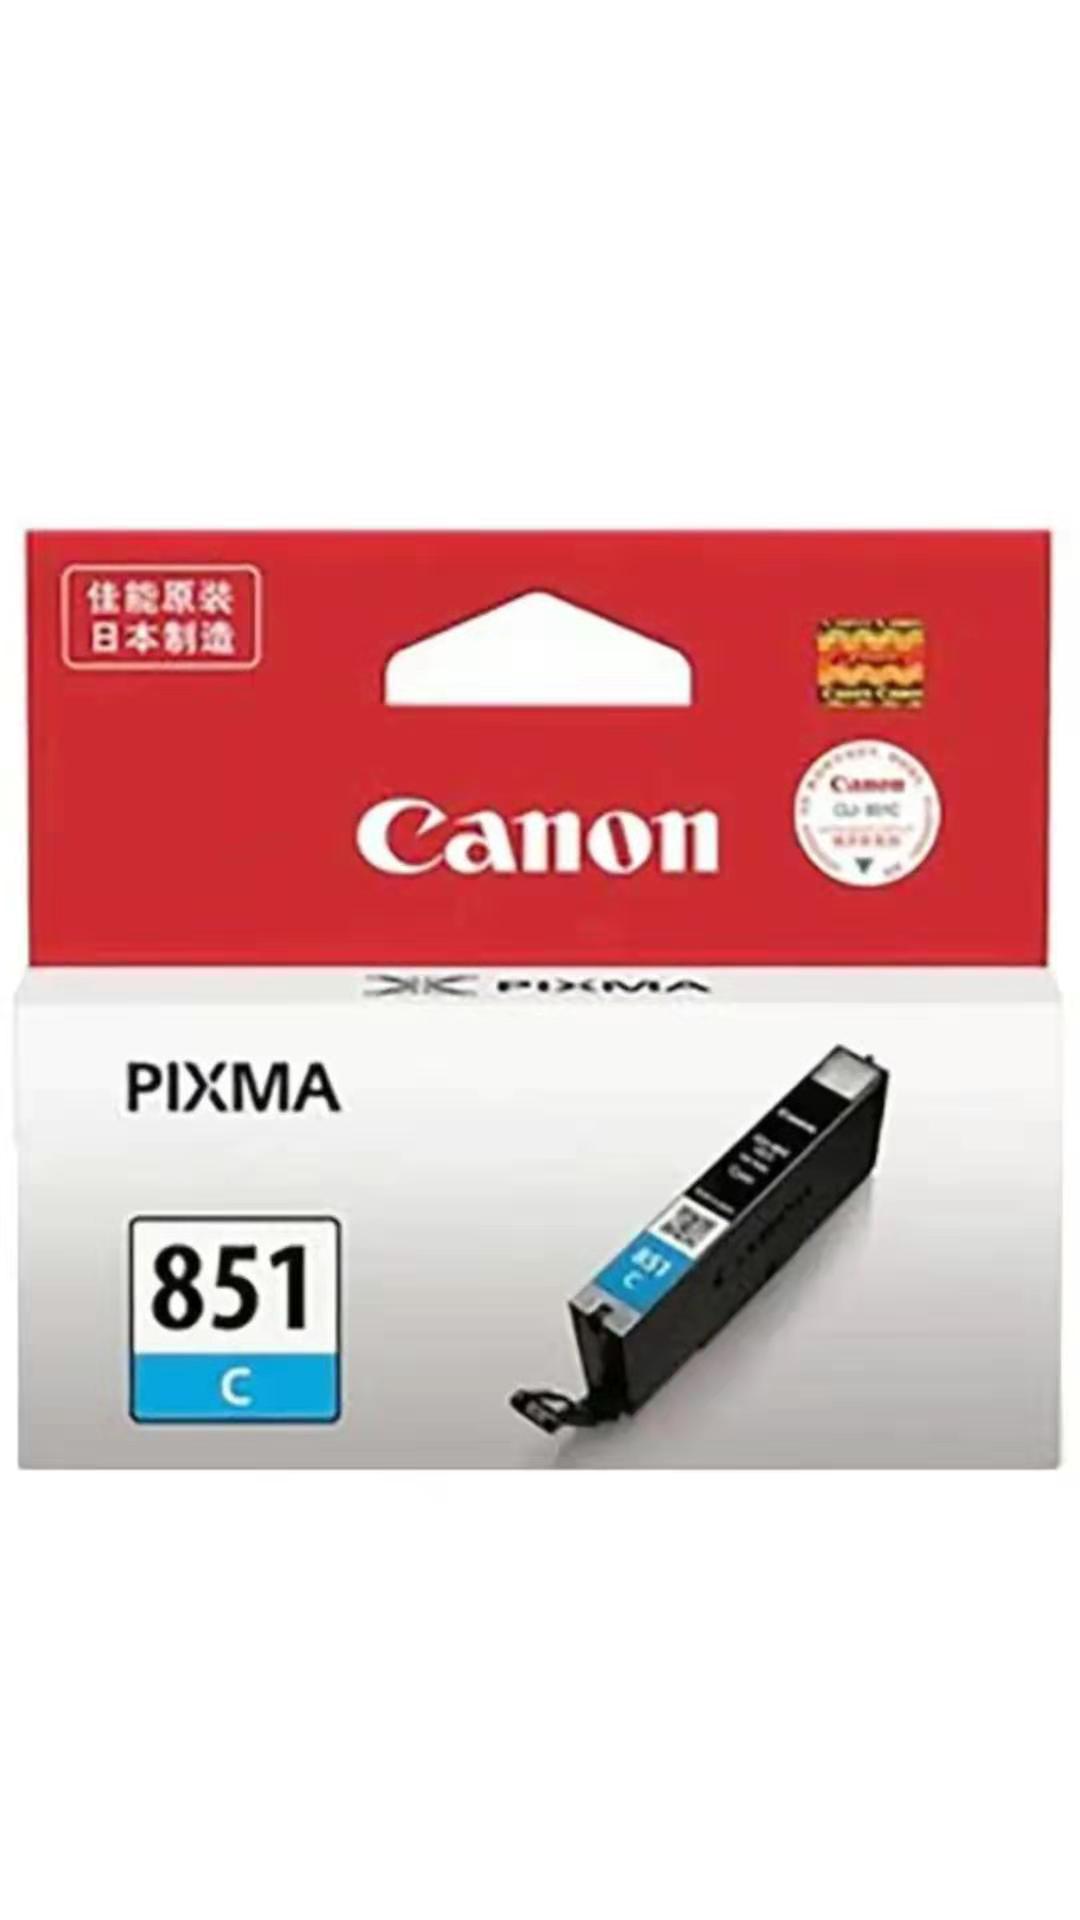 佳能CLI-851C青色墨盒适用于佳能7280彩色打印机_http://www.zhongqingyang.cn/img/images/C201907/1563181151022.jpg